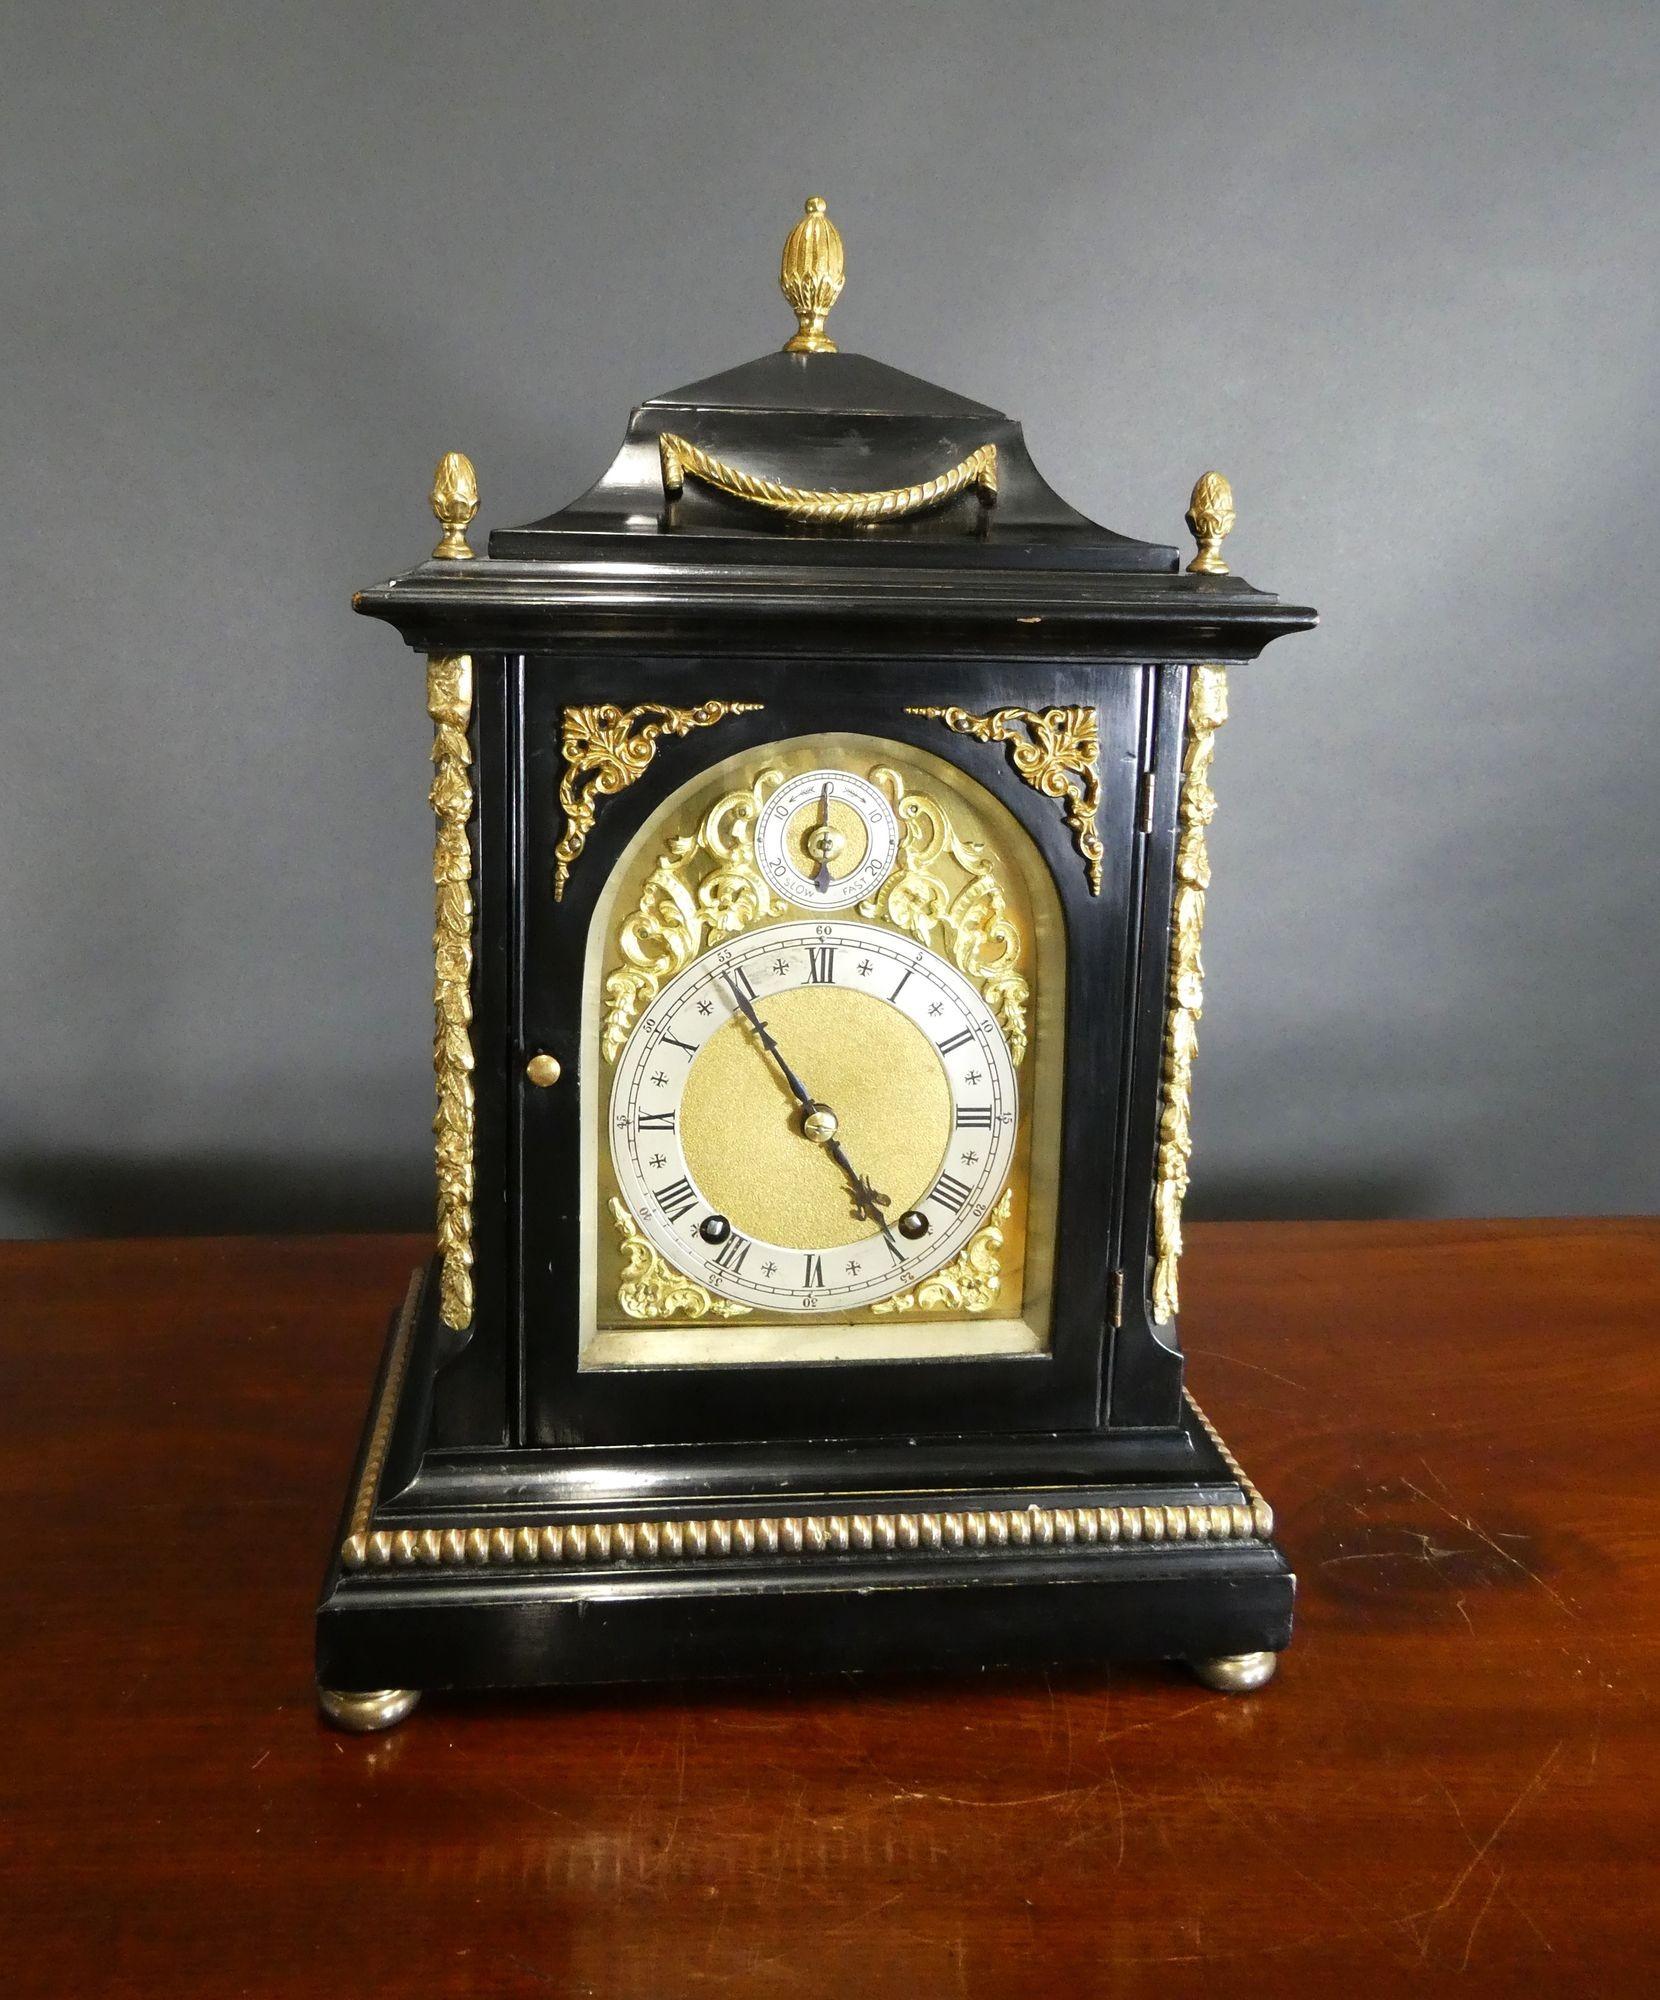 Horloge de cheminée victorienne Ting-Tang ébonisée
Pendule de cheminée victorienne logée dans un boîtier ébonisé avec des montures en bronze doré appliquées, reposant sur une plinthe à gradins avec une décoration de corde et sur quatre pieds en